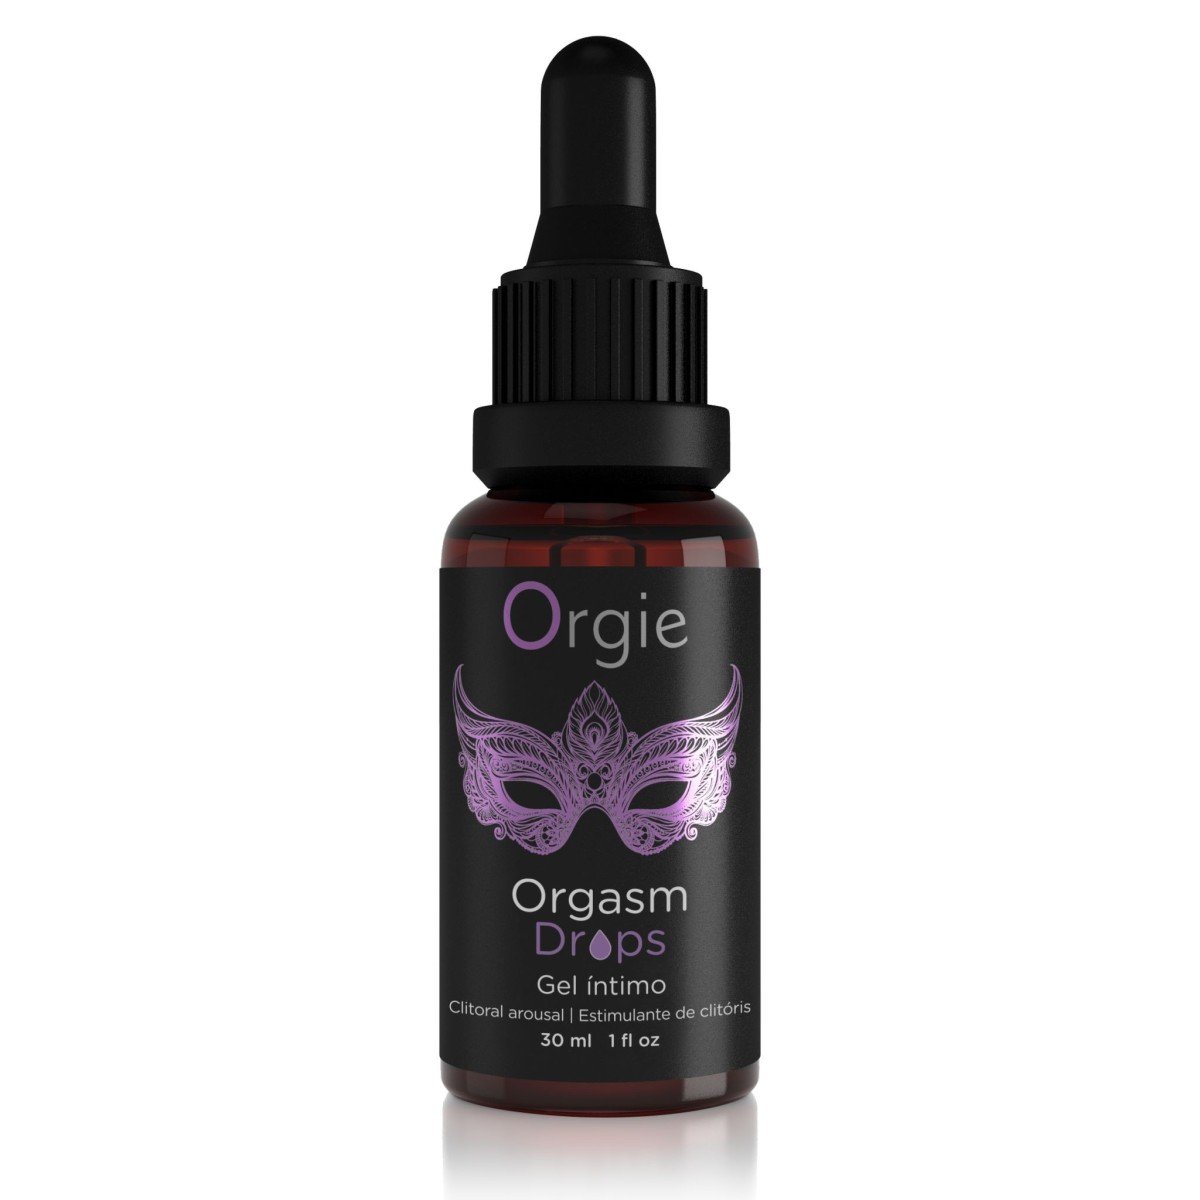 Orgie Orgasm Drops 30 ml, intímny masážny olej na klitoris pre zvýšenie citlivosti